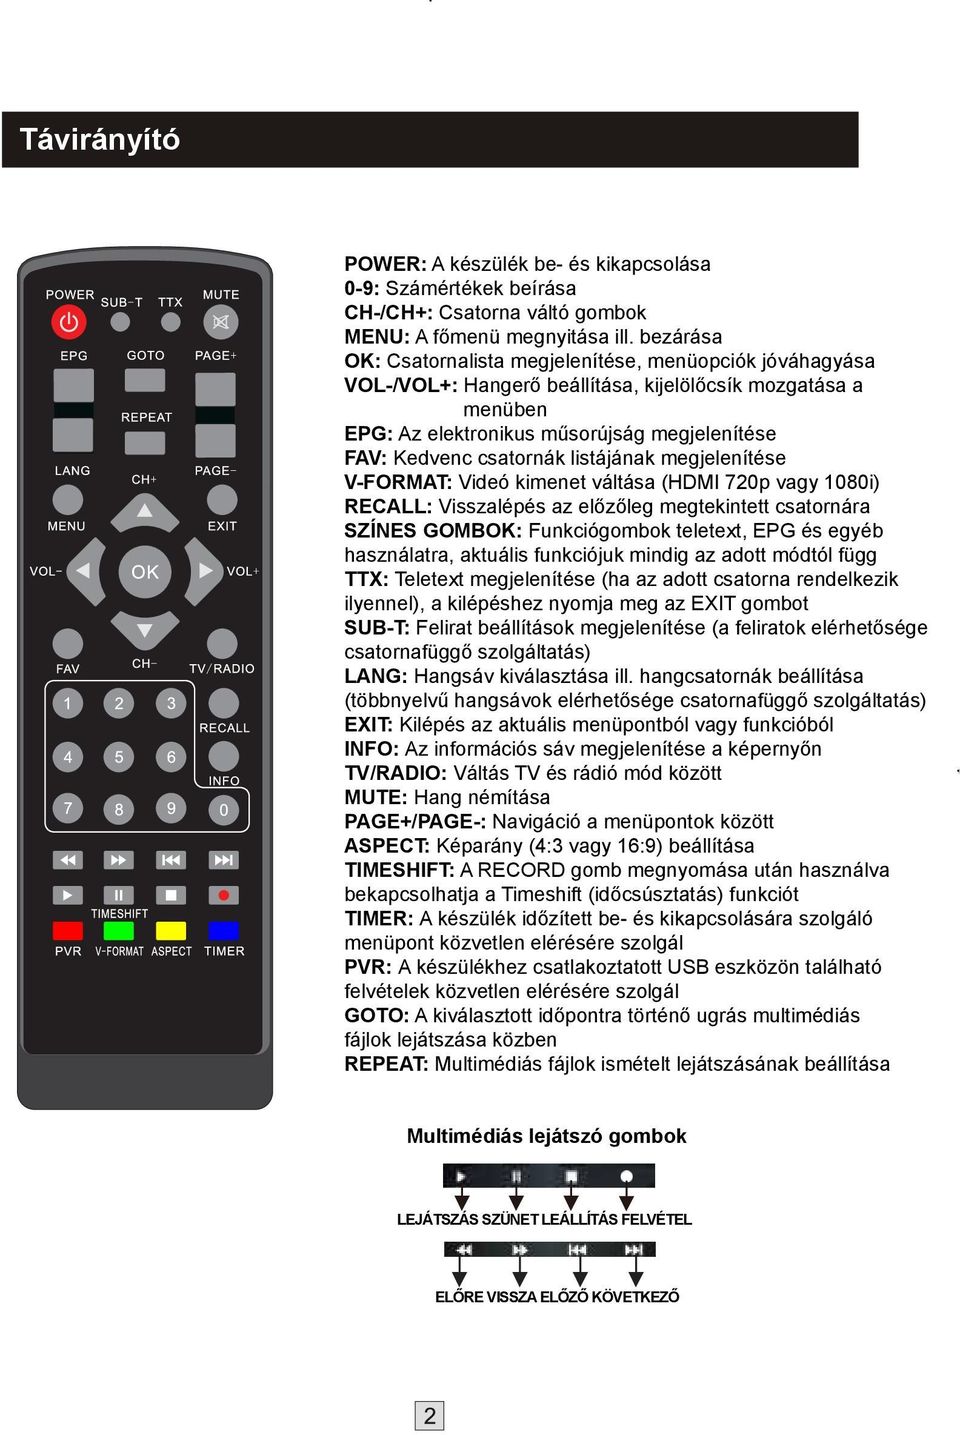 TTX: Teletext megjelenítése (ha az adott csatorna rendelkezik SUB-T: LANG: EXIT: INFO: TV/RADIO: MUTE: Hang némítása PAGE+/PAGE-: ASPECT: